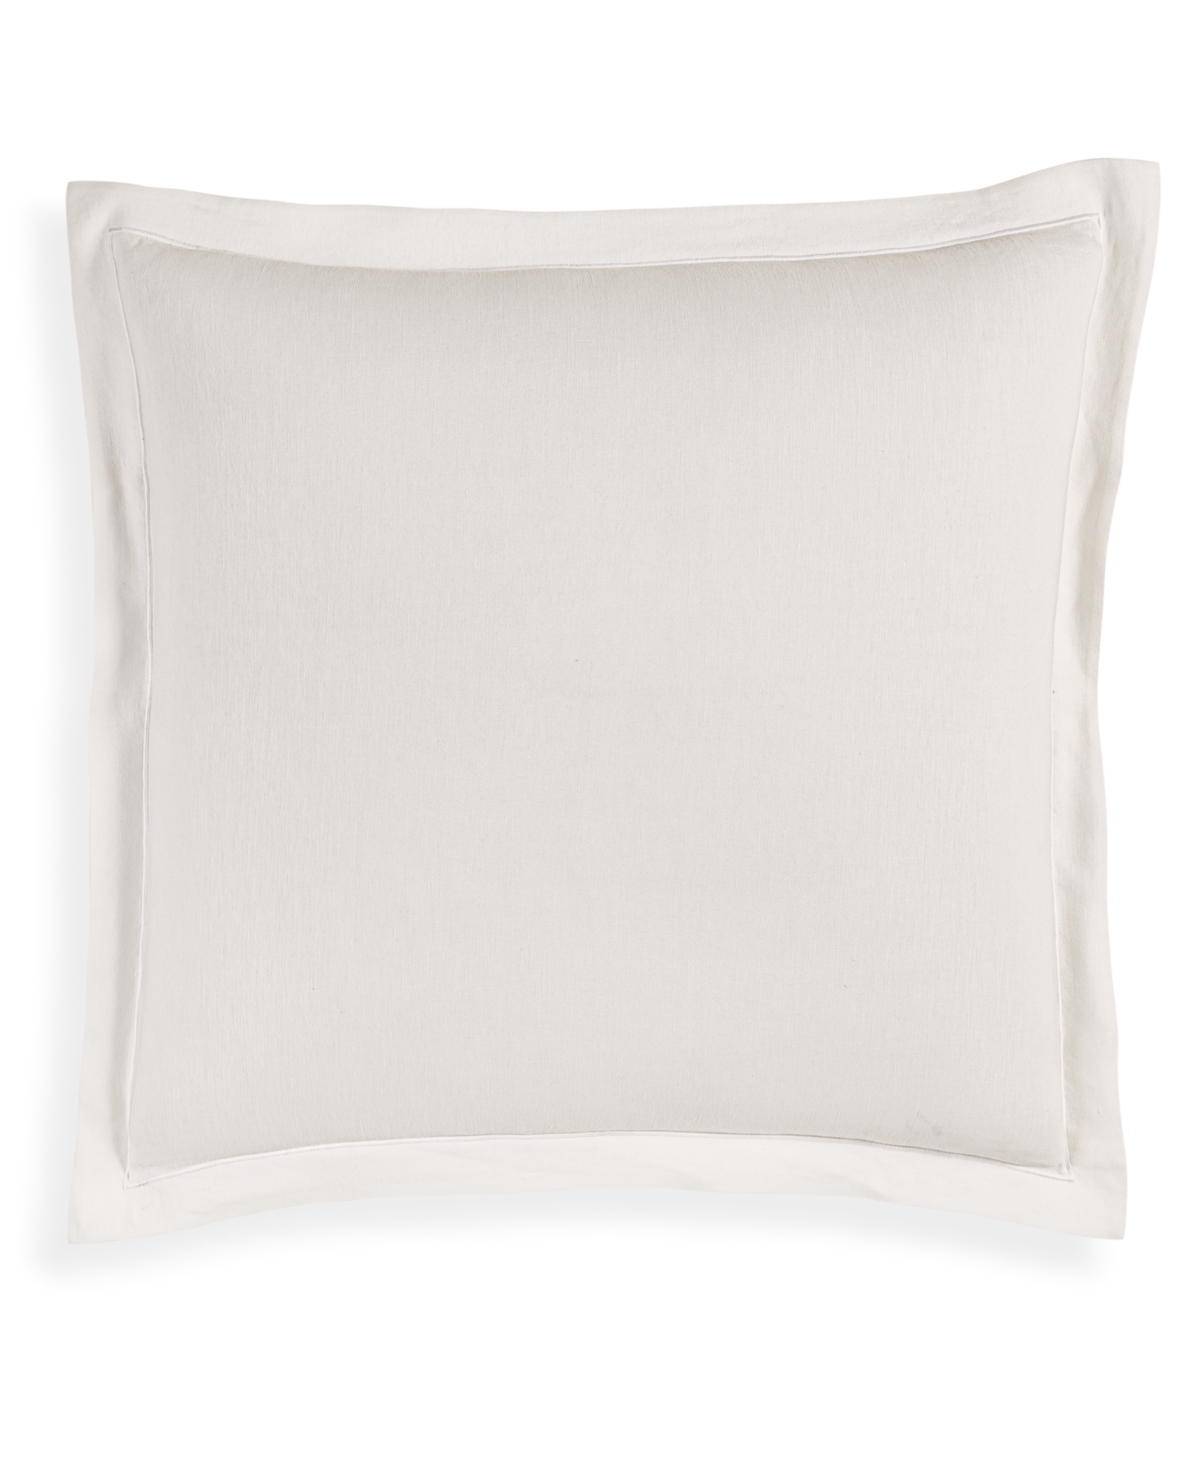 Linen/Modal Blend Sham, European, Created for Macy's - White